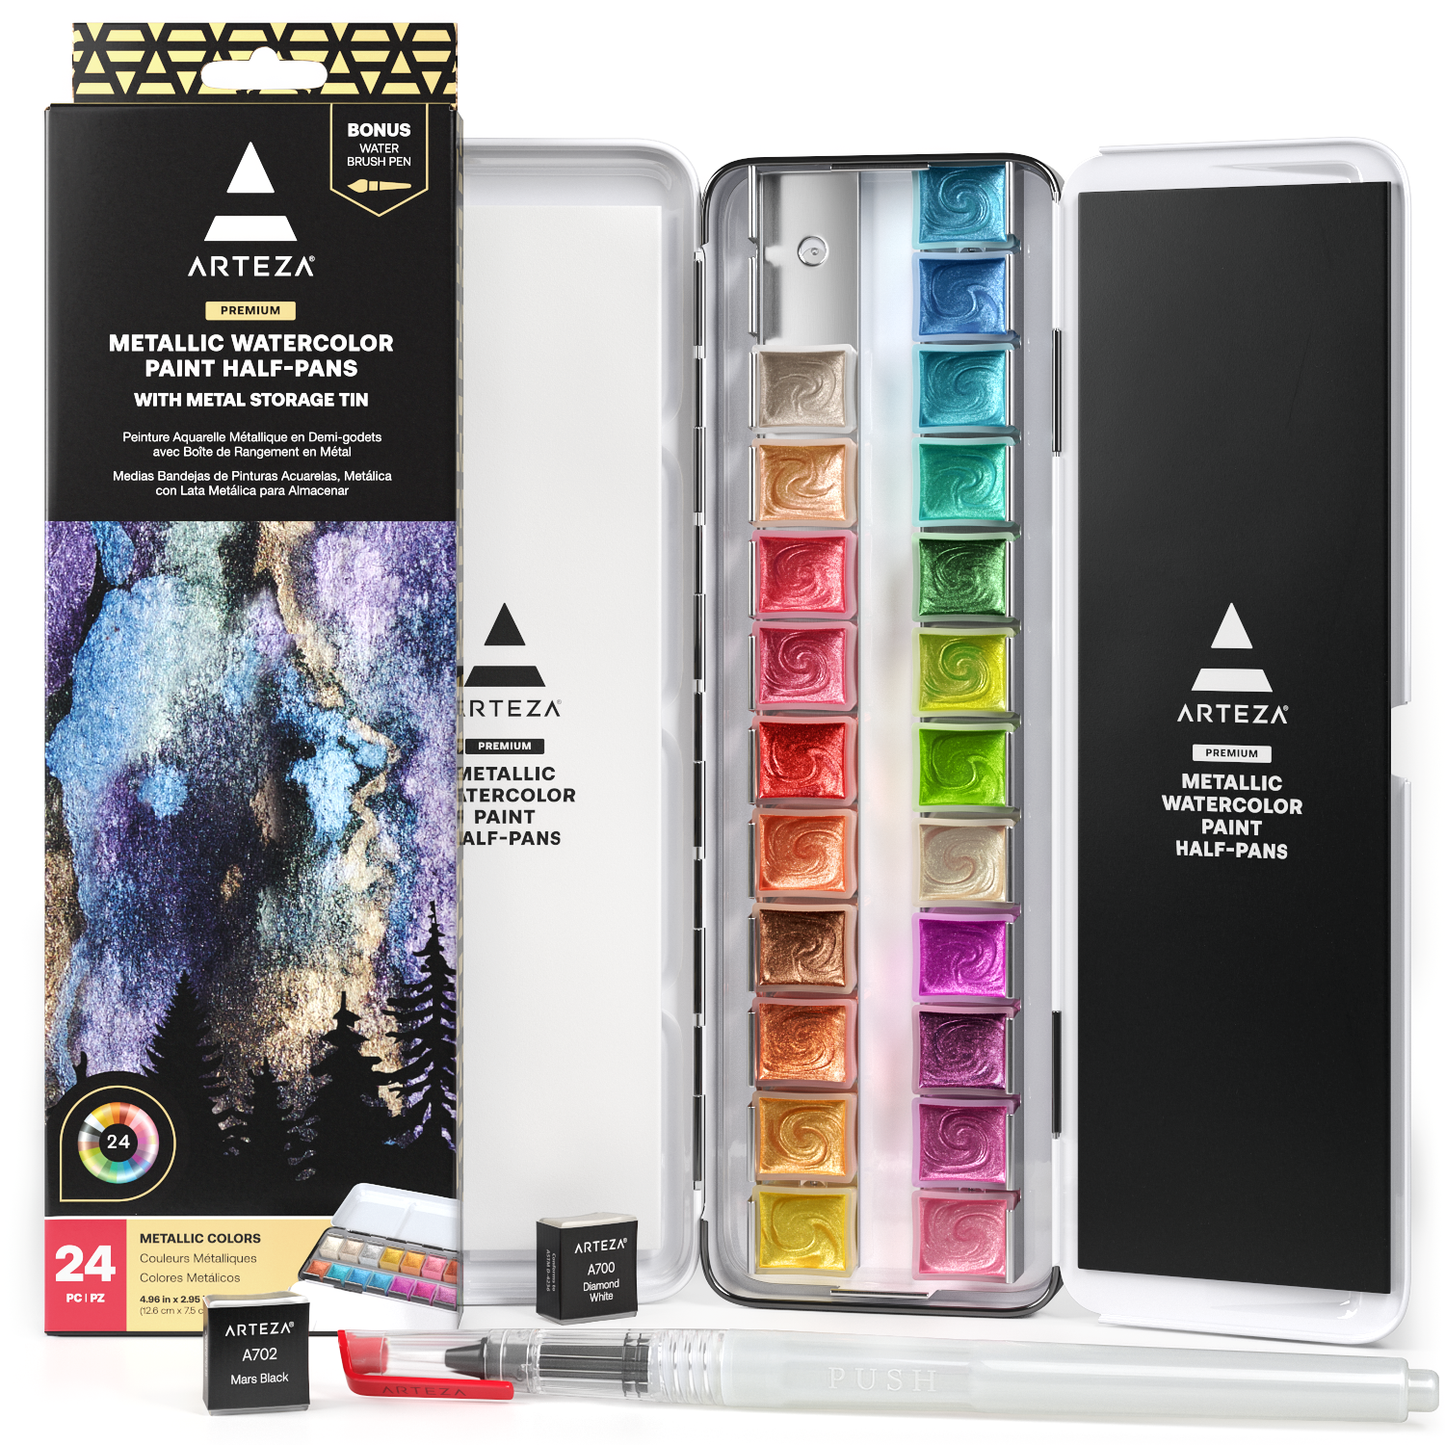 40 Colors Metallic Watercolor Paint Set, Metallic Watercolour Paints